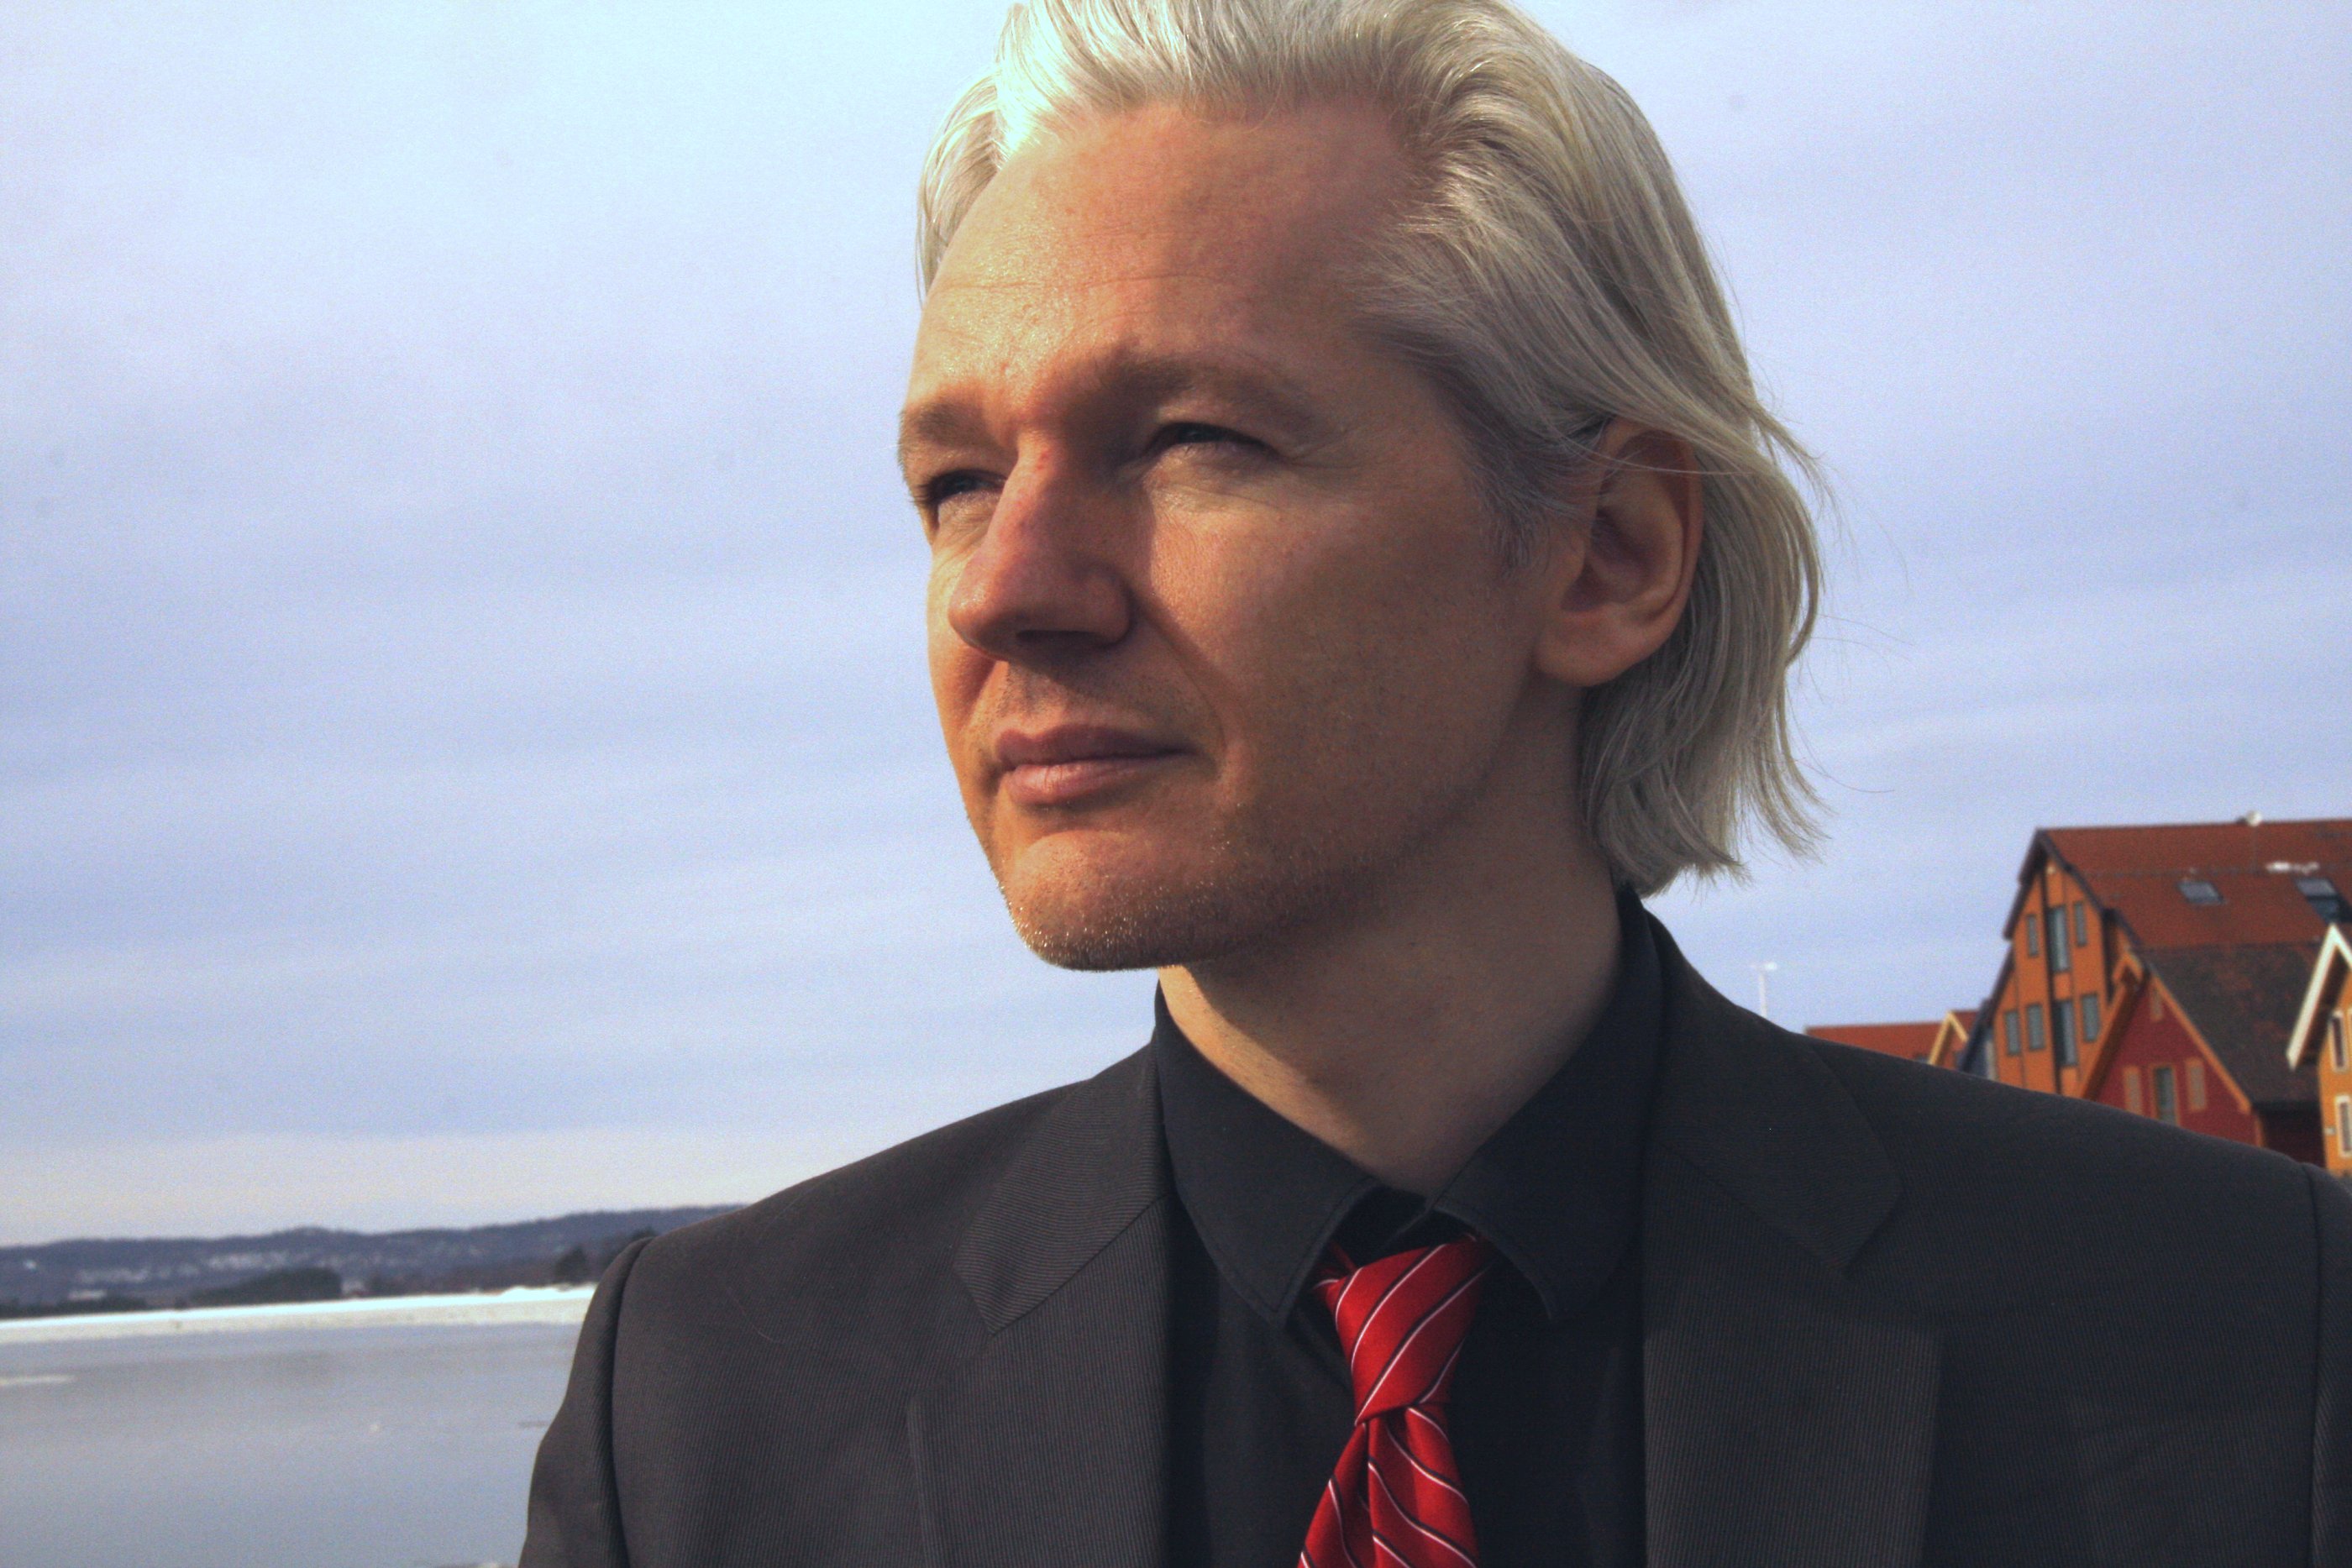 Zdjęcie: Brytyjski sędzia OK's ekstradycja założyciela WikiLeaks Juliana Assange'a do USA; powinien zostać UWOLNIONY za ujawnienie globalistycznego głębokiego państwa